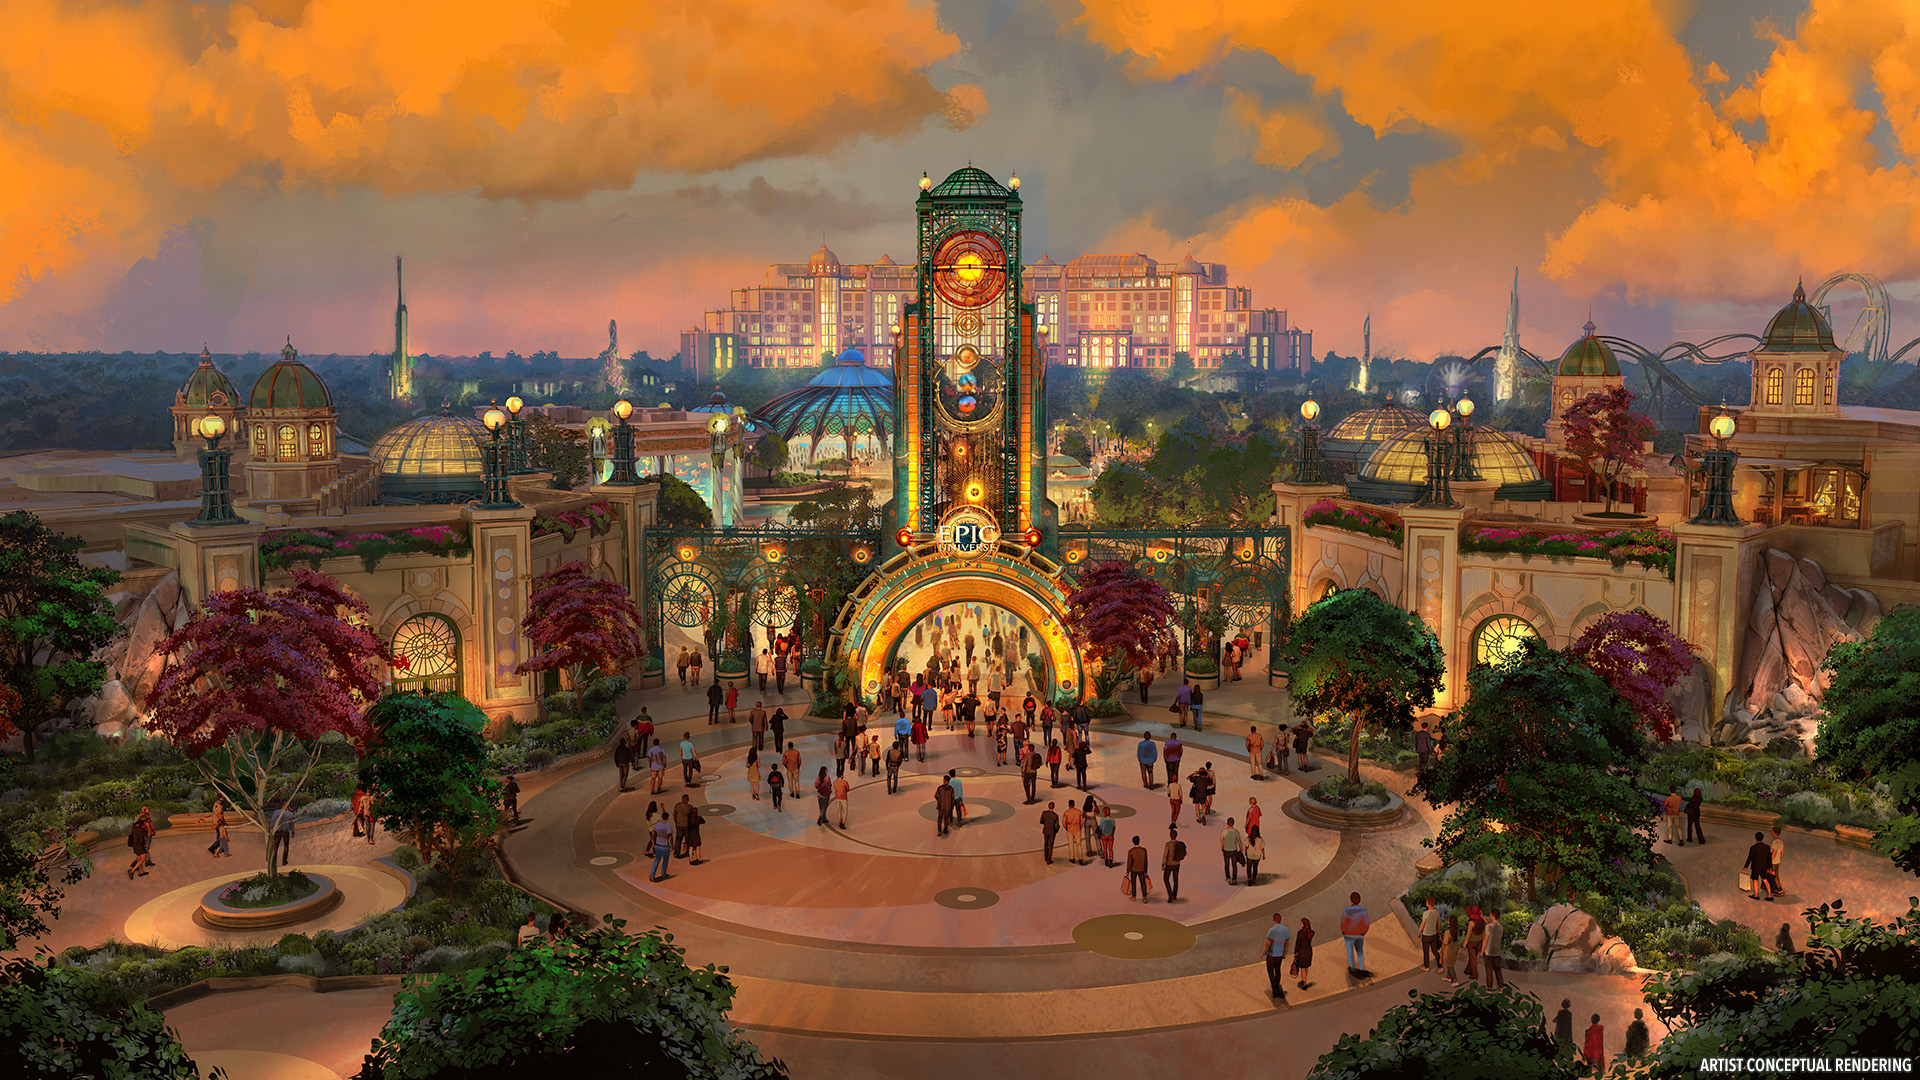 Universal publica primeras imágenes y detalles sobre el nuevo parque Universal Epic Universe